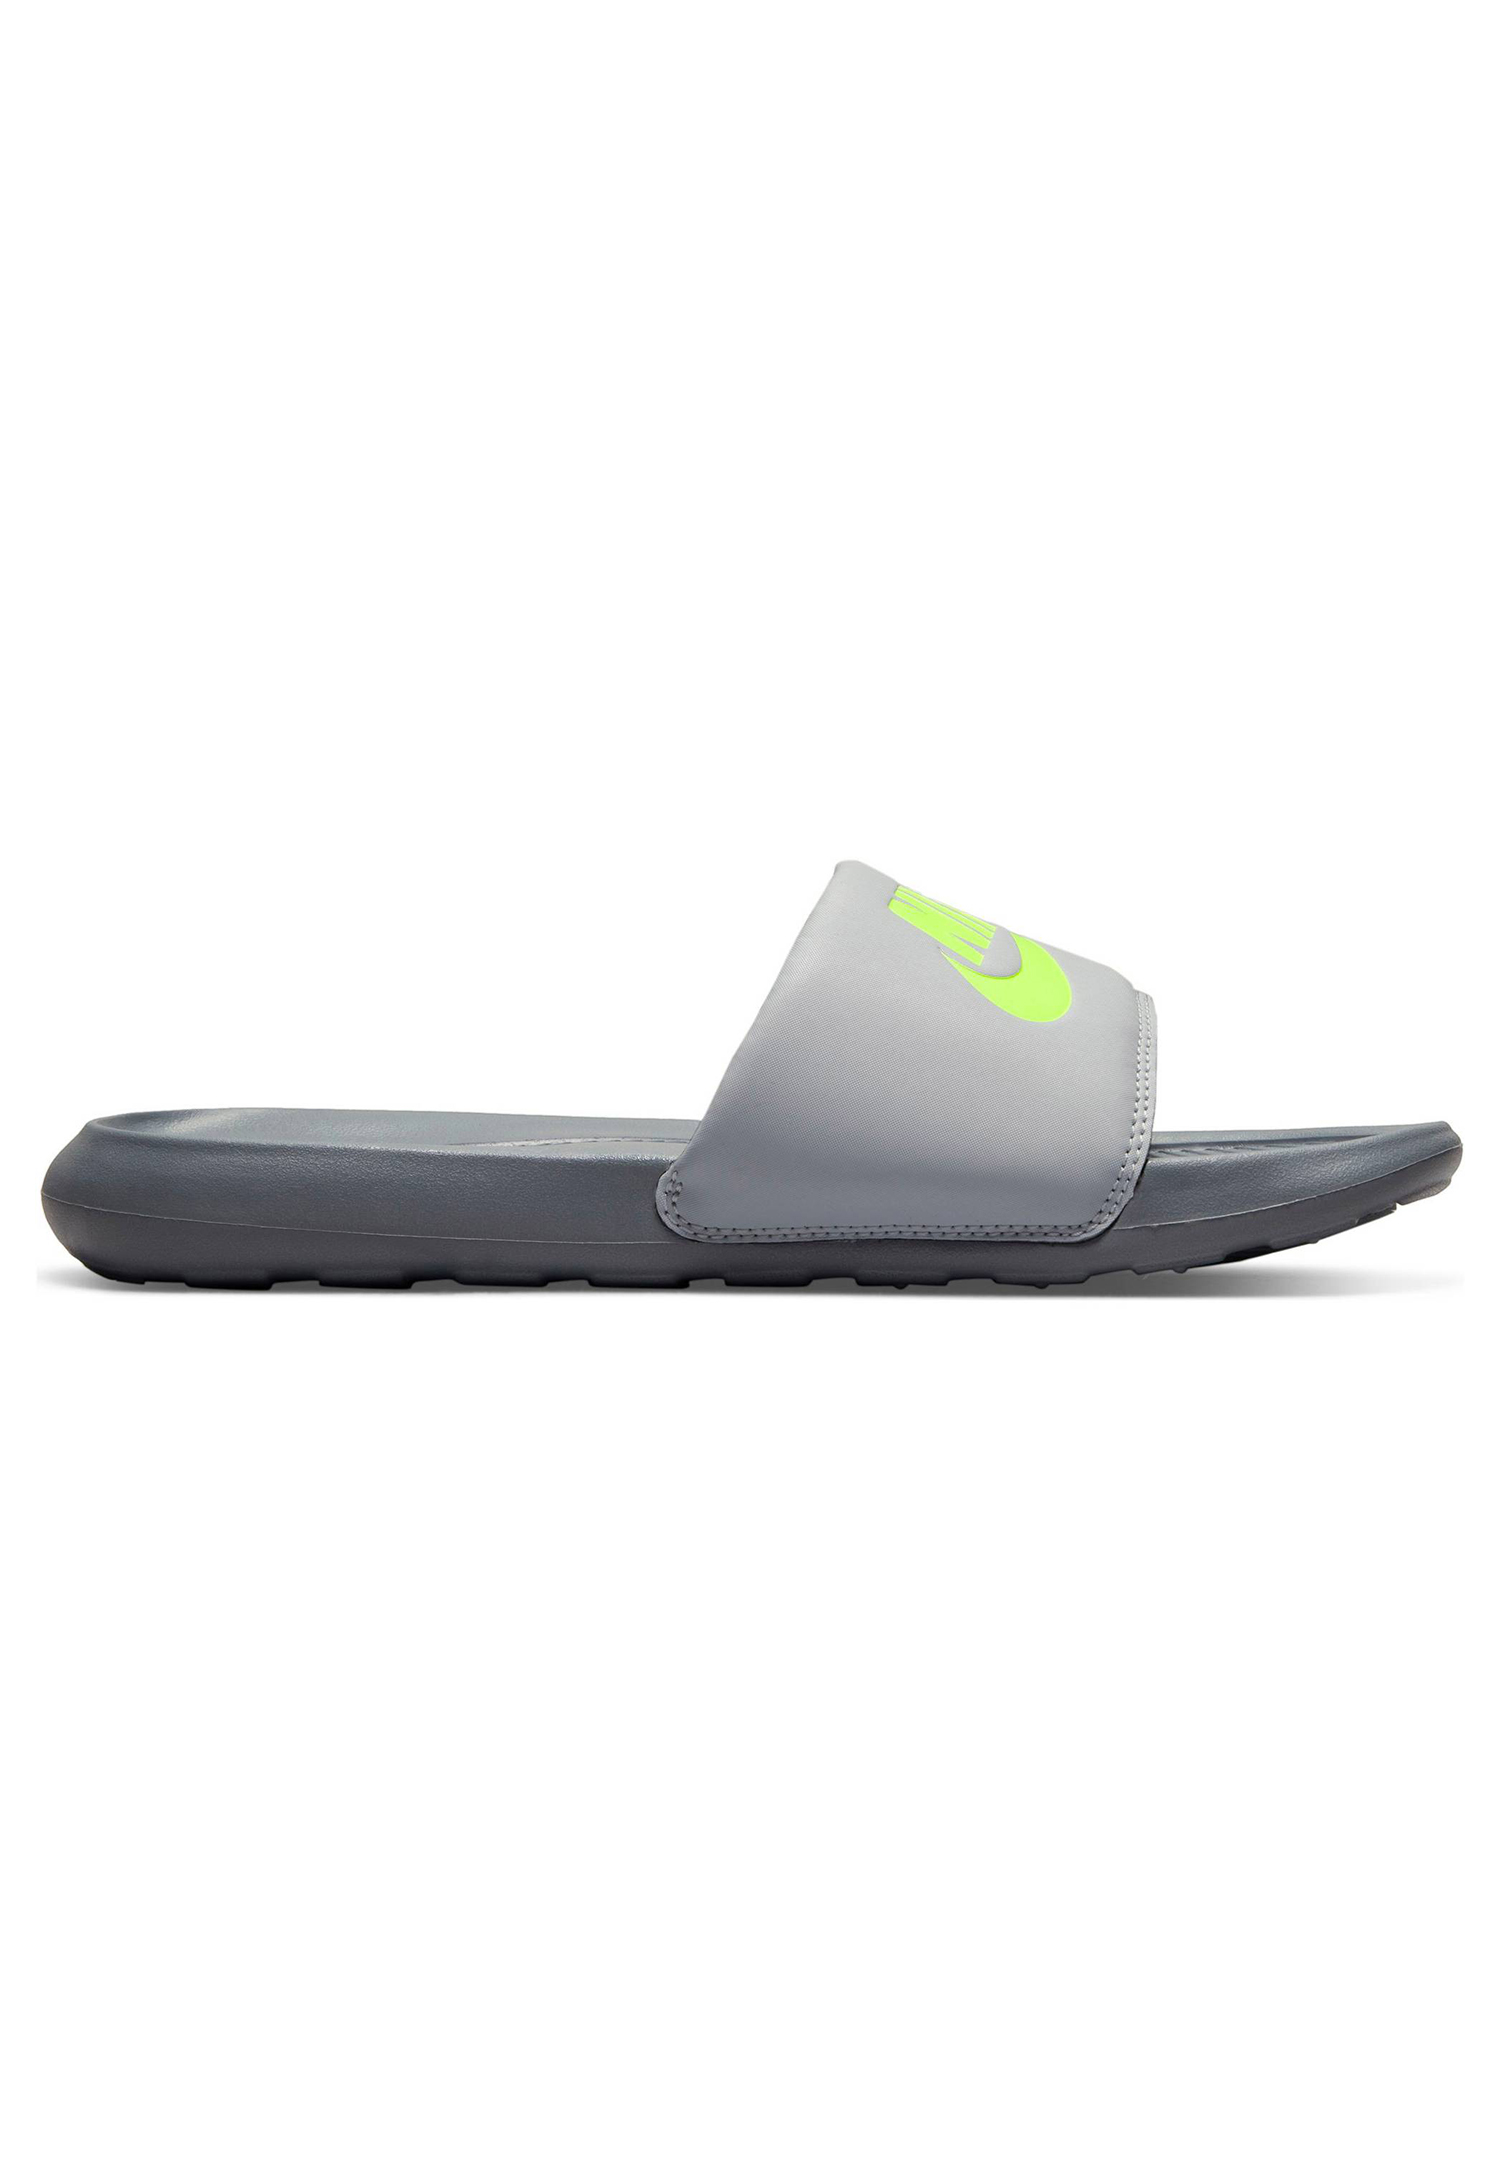 Nike Victori One Slide Herren Badelatschen Schlappe CN9675 011 grau